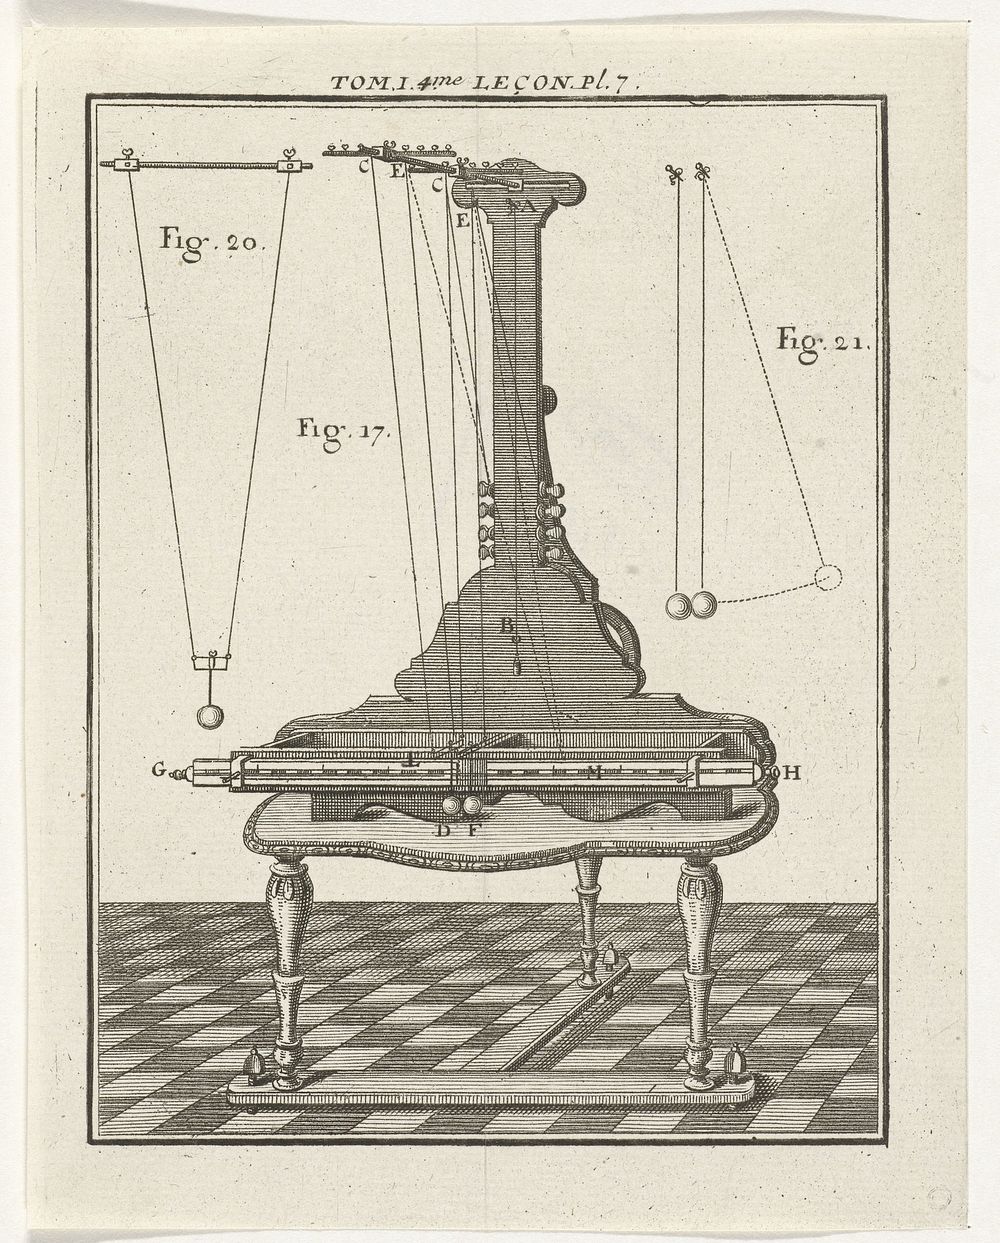 Natuurkundig instrument en modellen (1759) by Nicolaas van Frankendaal and Kornelis van Tongerlo